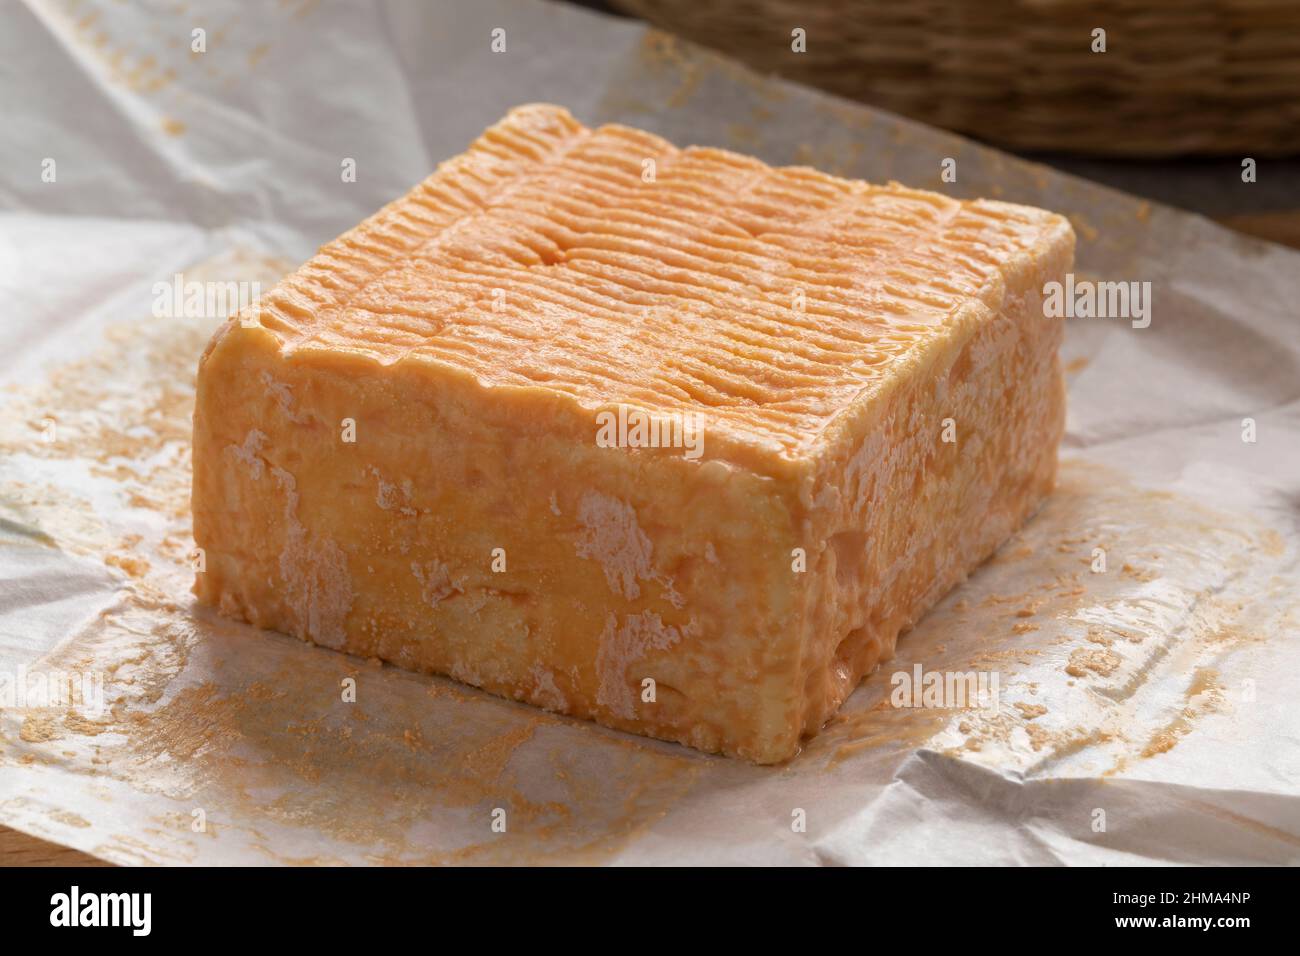 Einzelnes ganzes Stück Limburger oder Herve Käse mit starkem Geruch auf Packpapier Stockfoto